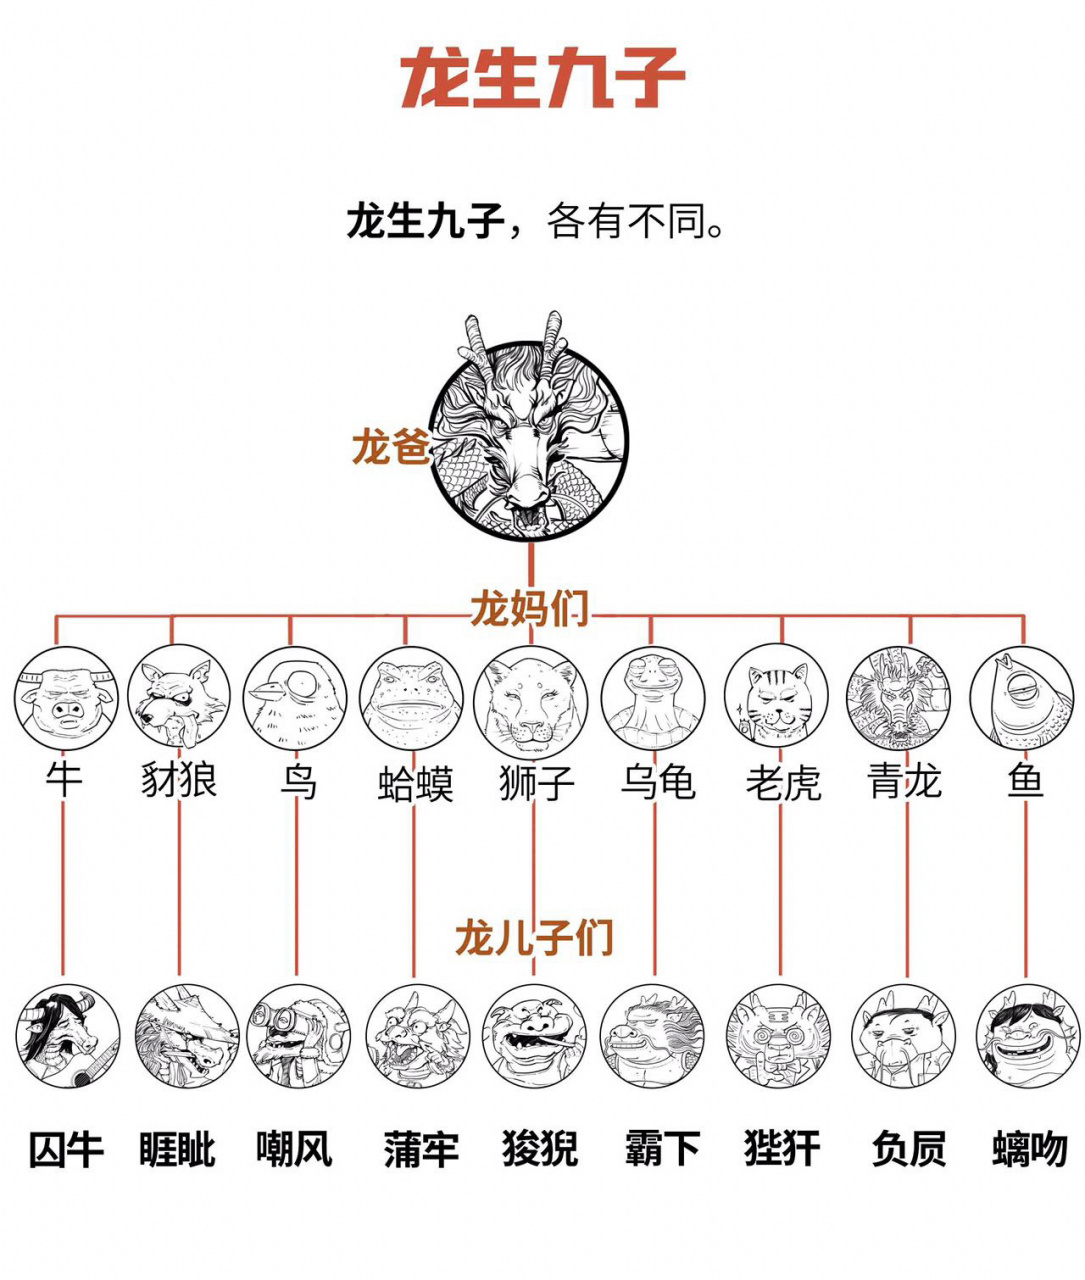 九龙子即中国神话传说中龙生的九个儿子,每个都不成龙的形态,而且各有